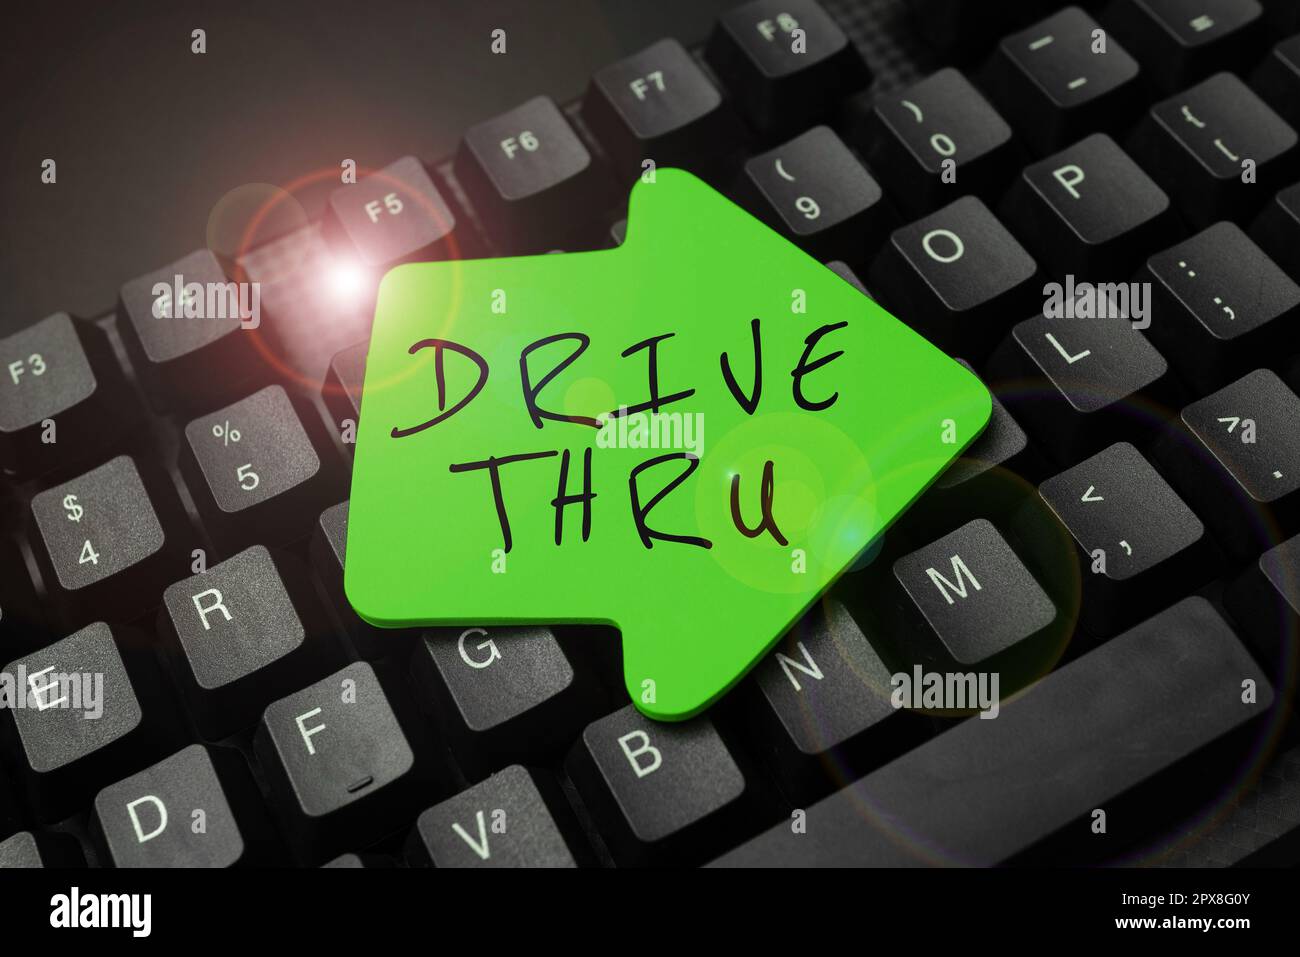 Texte d'écriture drive-in, lieu de présentation d'affaires où vous pouvez obtenir le type de service en conduisant Banque D'Images